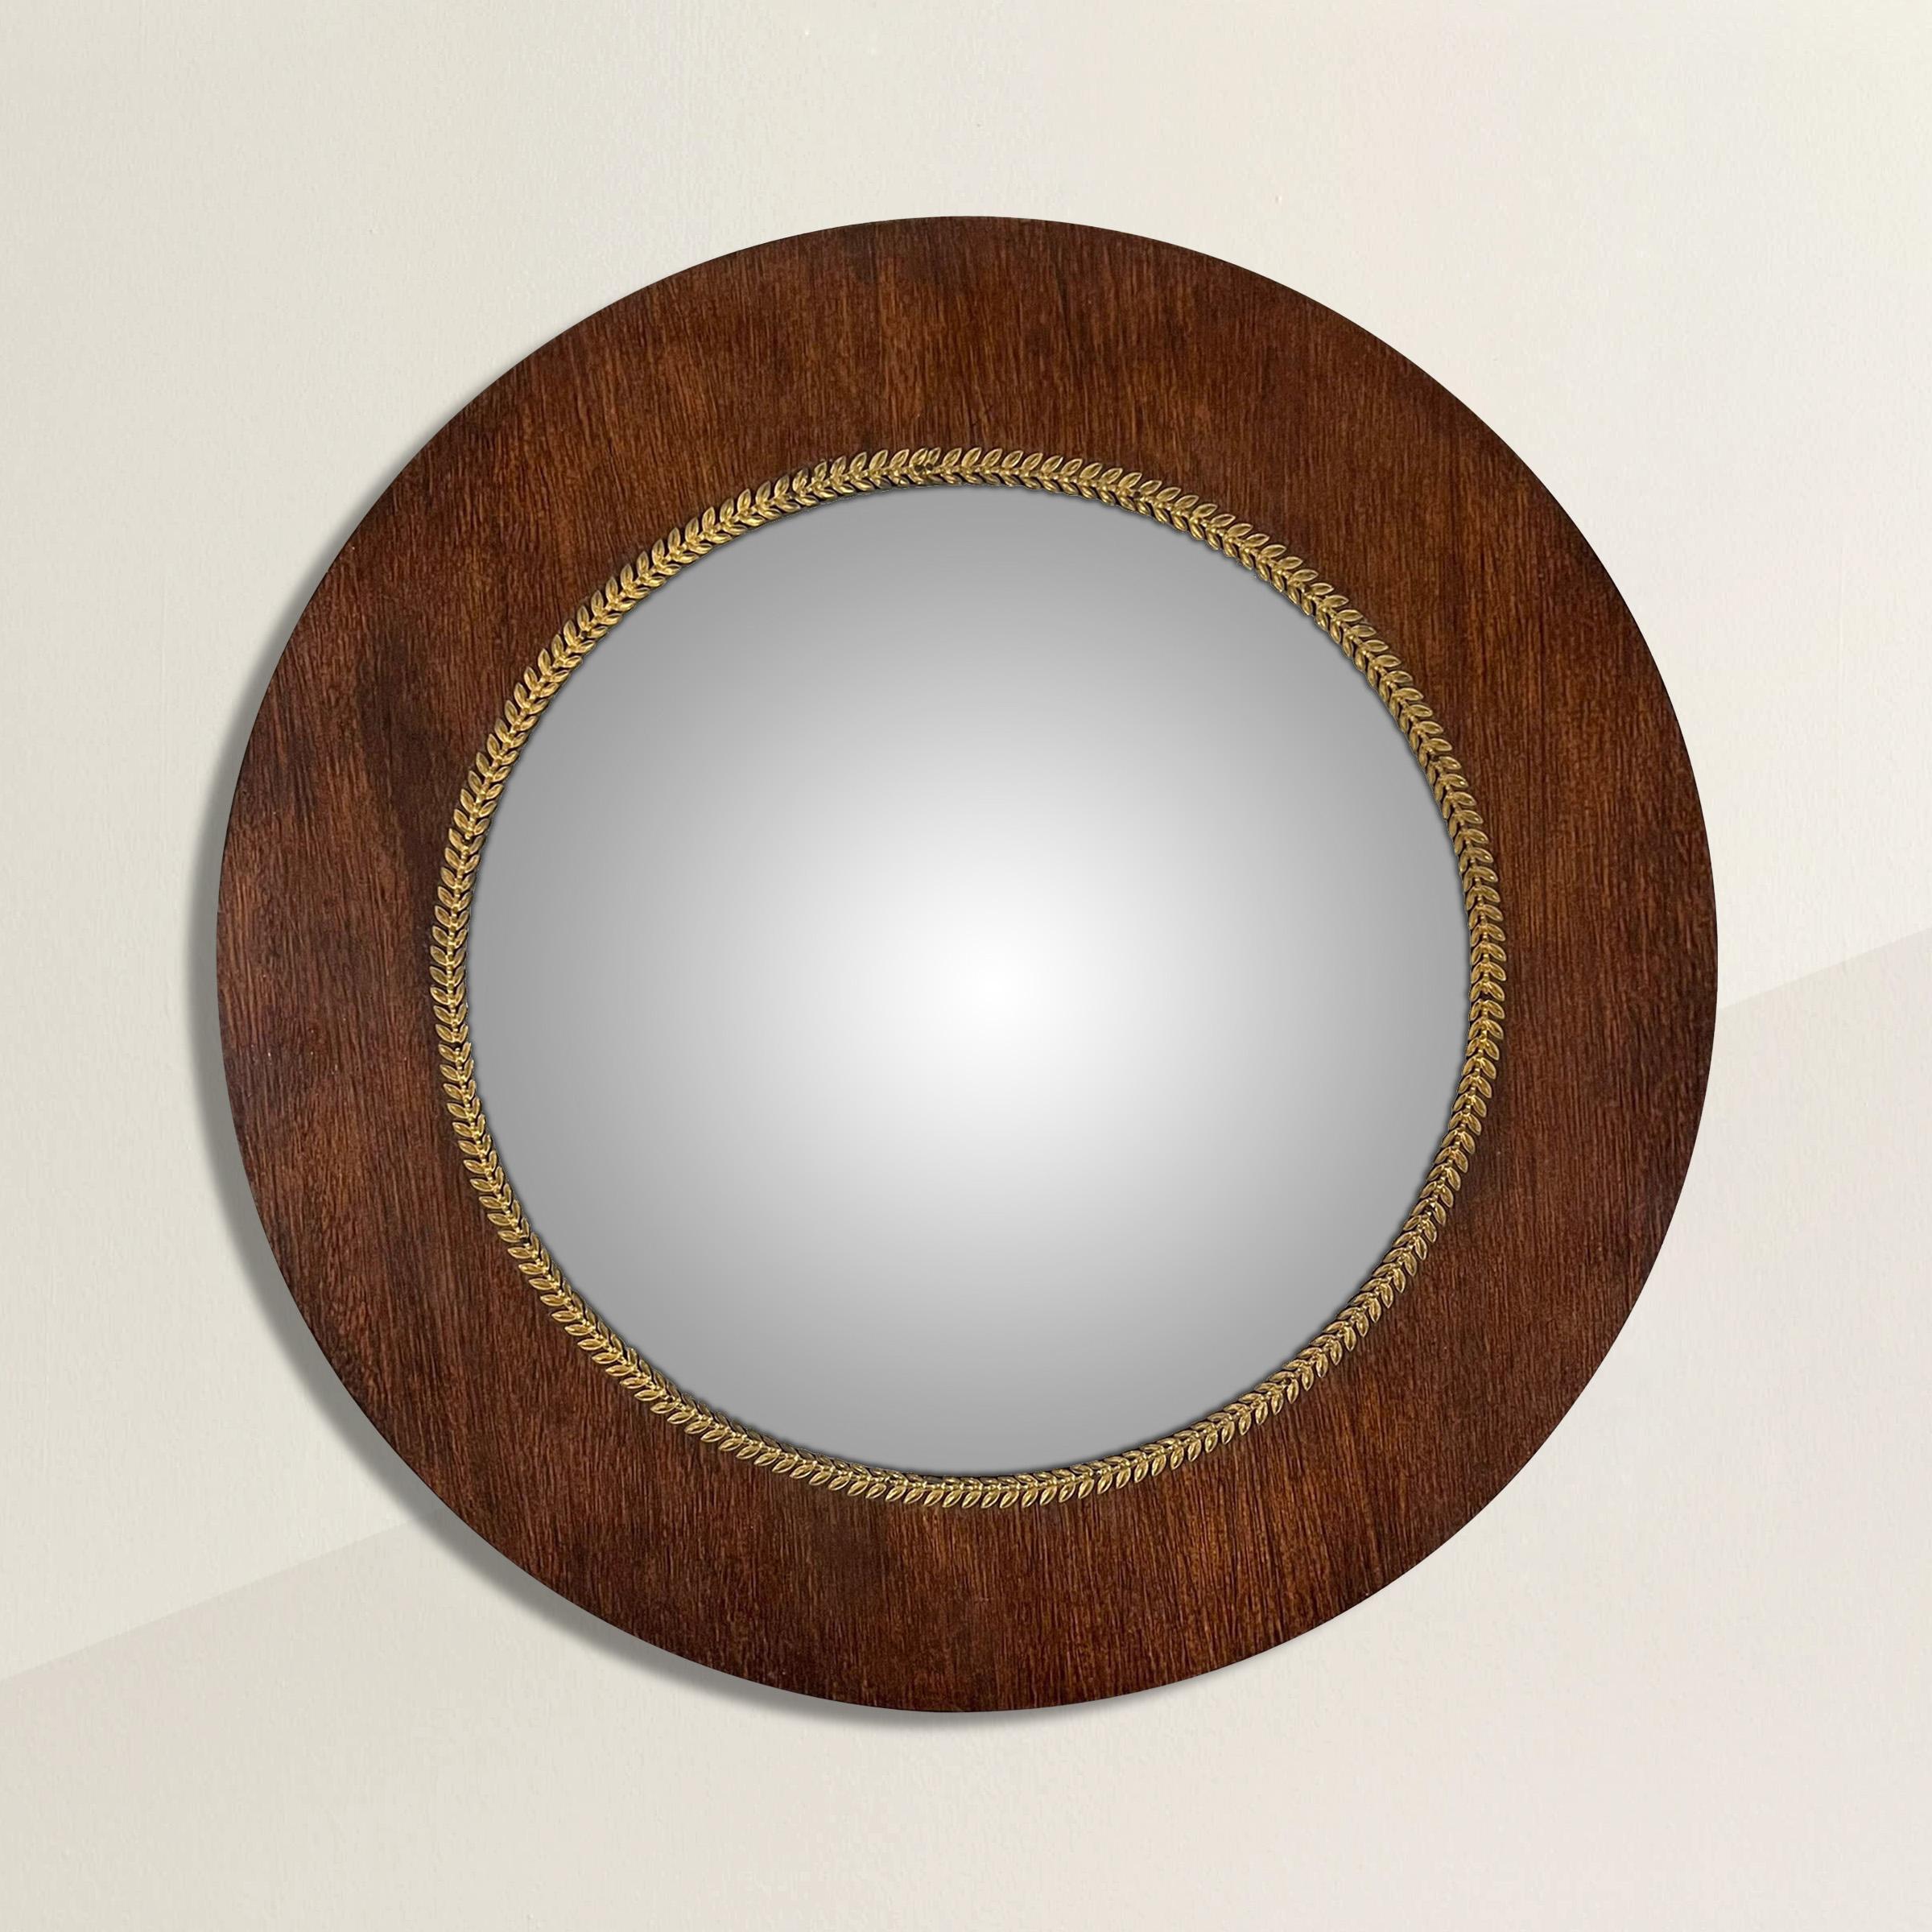 Eine atemberaubende frühen 19. Jahrhundert Französisch Empire Mahagoni gerahmt konvexen Spiegel mit einer dünnen vergoldeten Bronze Lorbeerkranz trimmen. Im Gegensatz zu den meisten konvexen Spiegeln, die gewölbt sind, hat dieser Spiegel eine